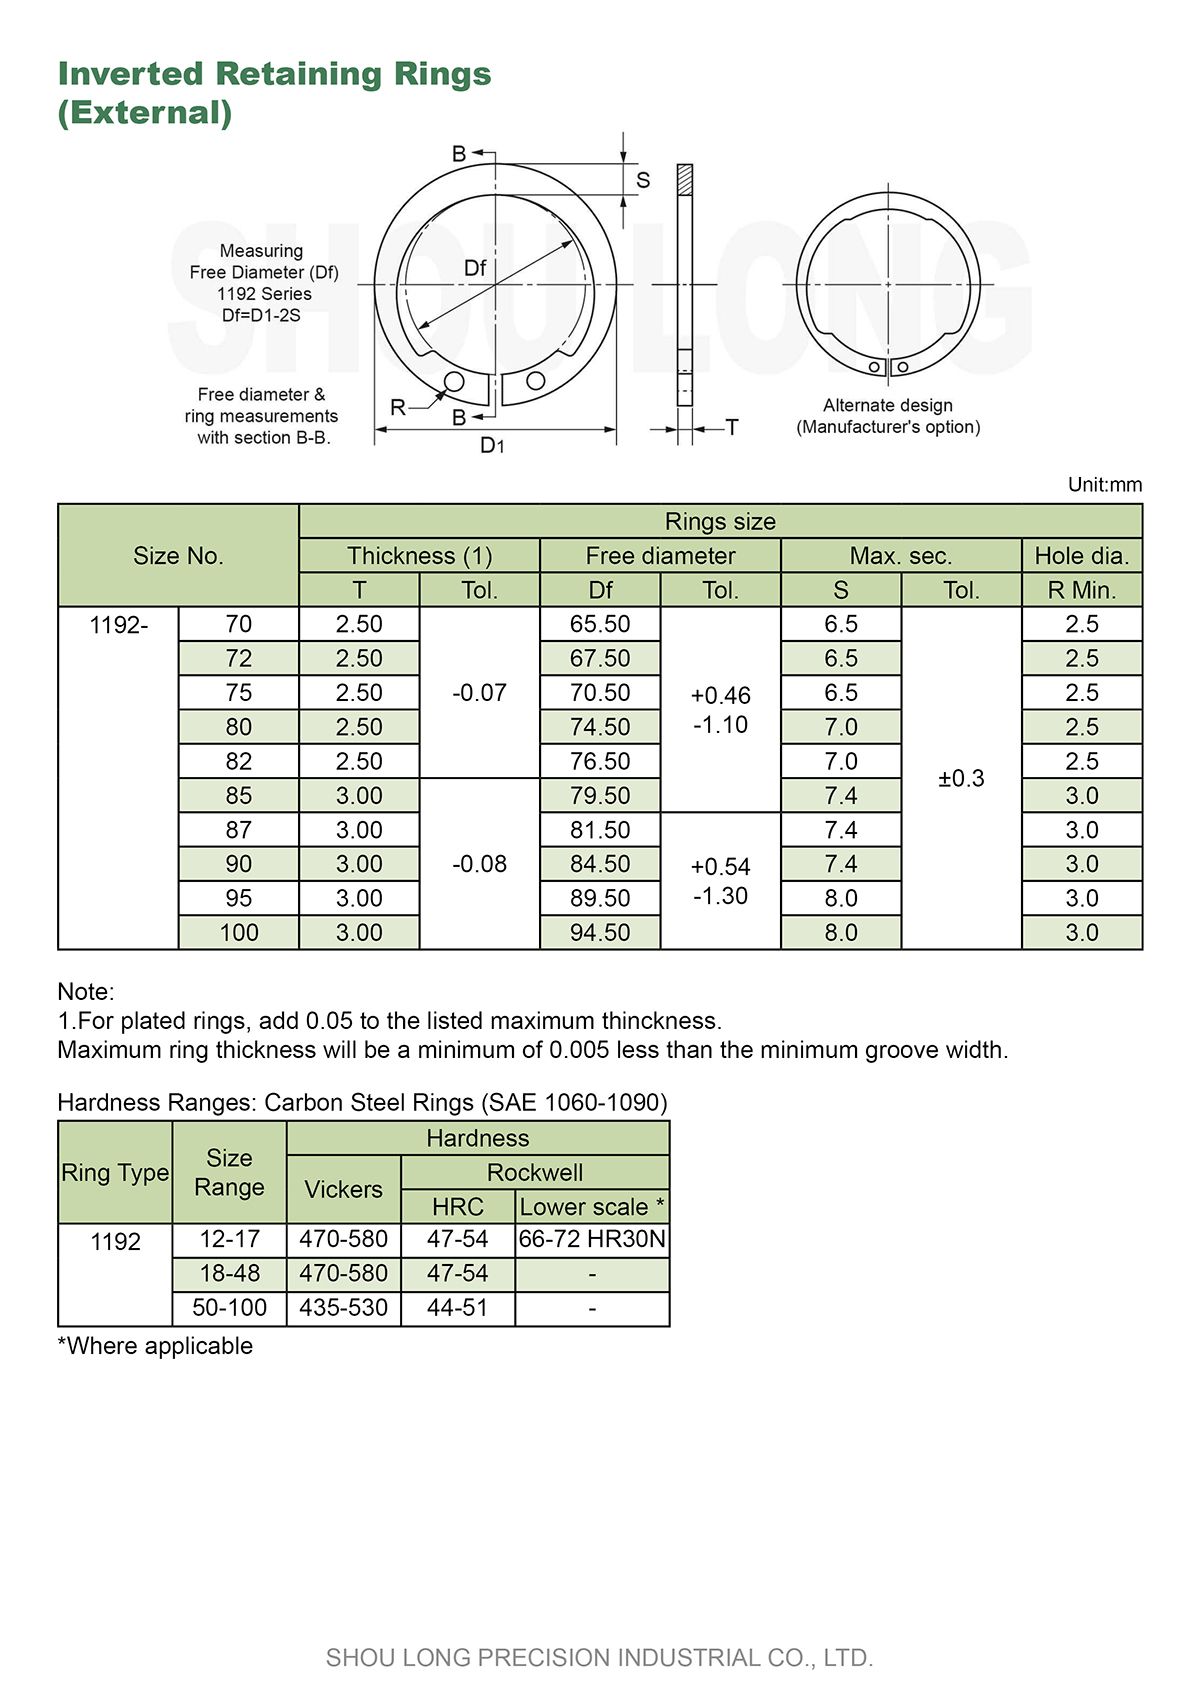 Specifiche degli anelli di trattenimento invertiti metrici per albero-2